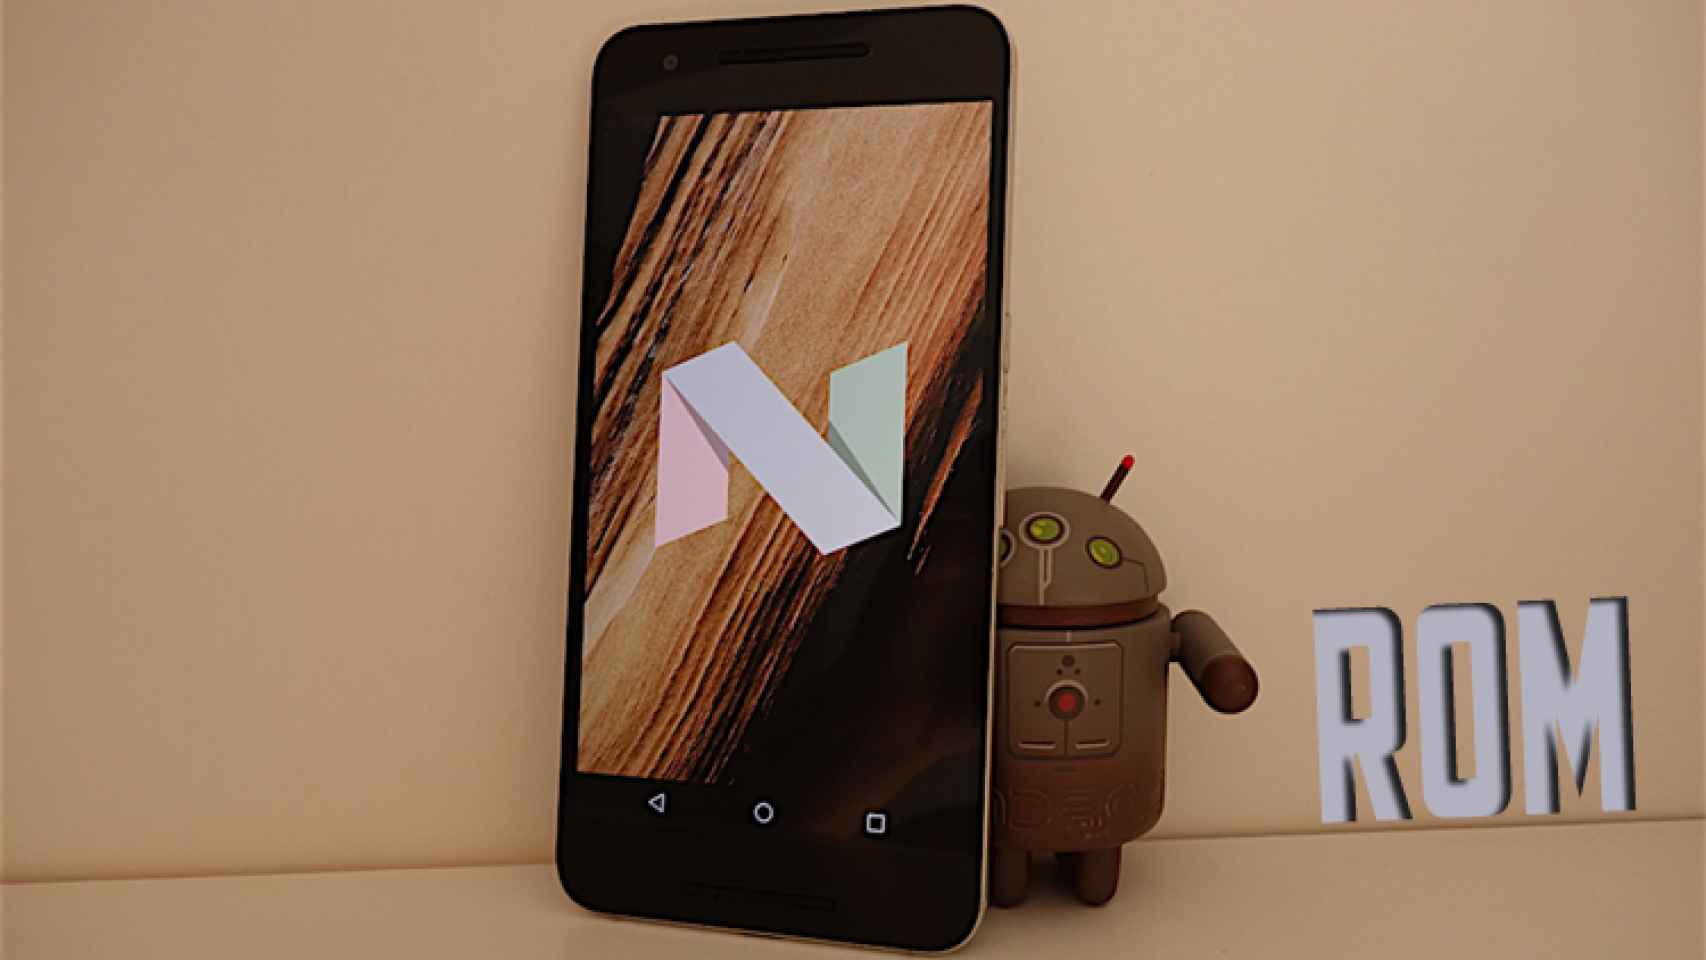 Prueba ya Android 7.0 Nougat con estas ROMs